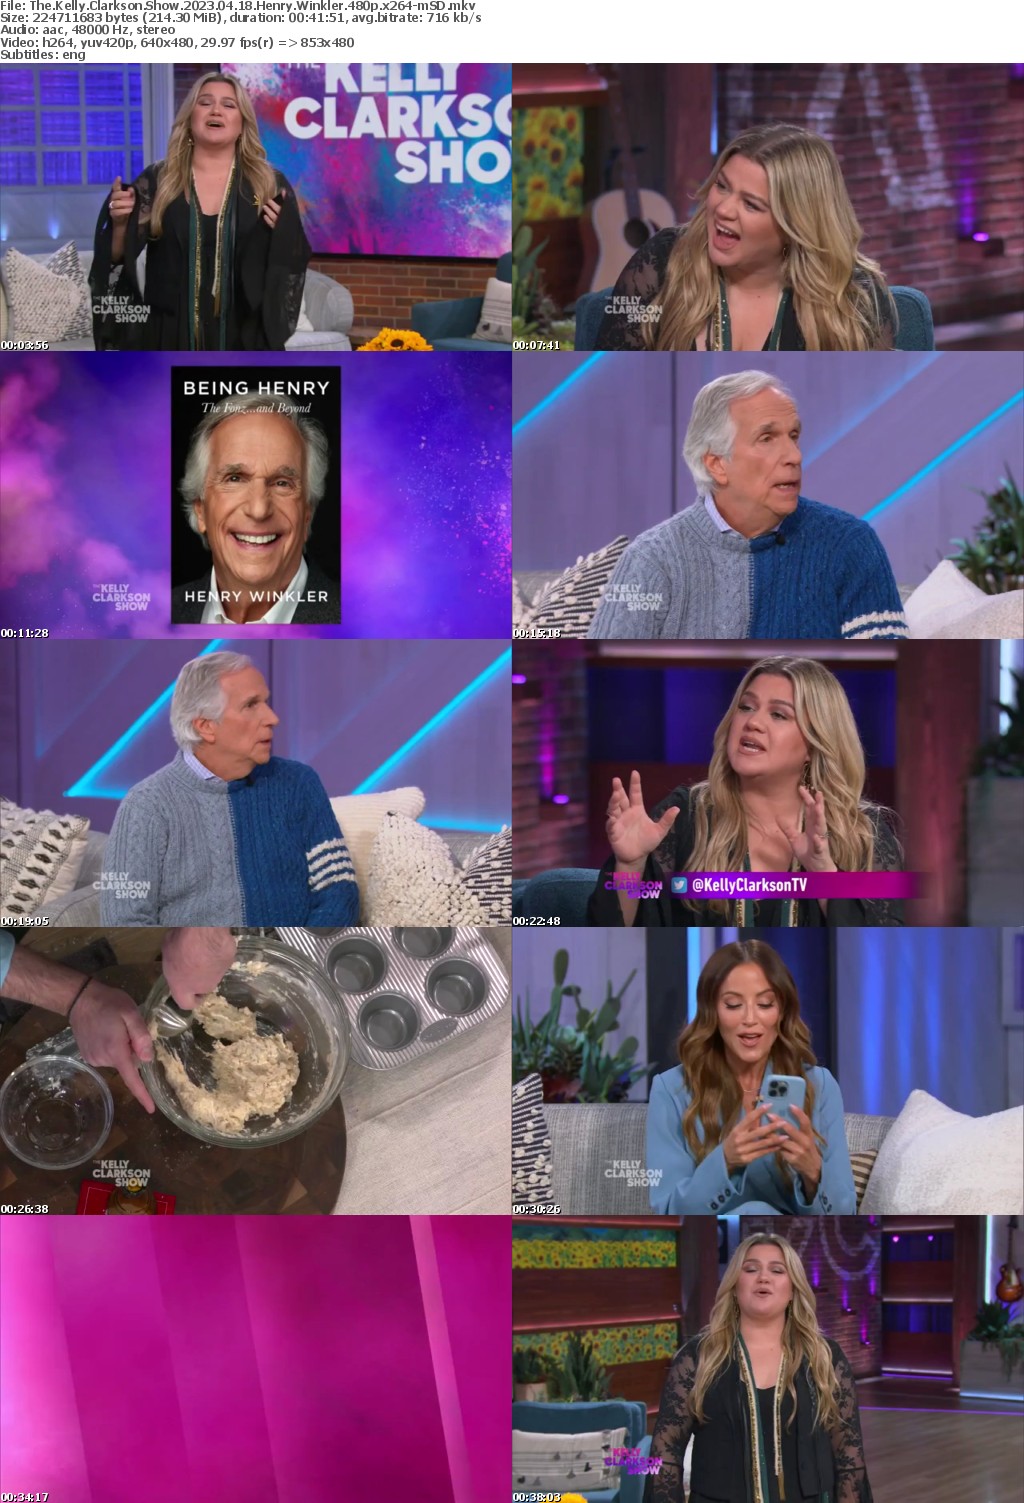 The Kelly Clarkson Show 2023 04 18 Henry Winkler 480p x264-mSD